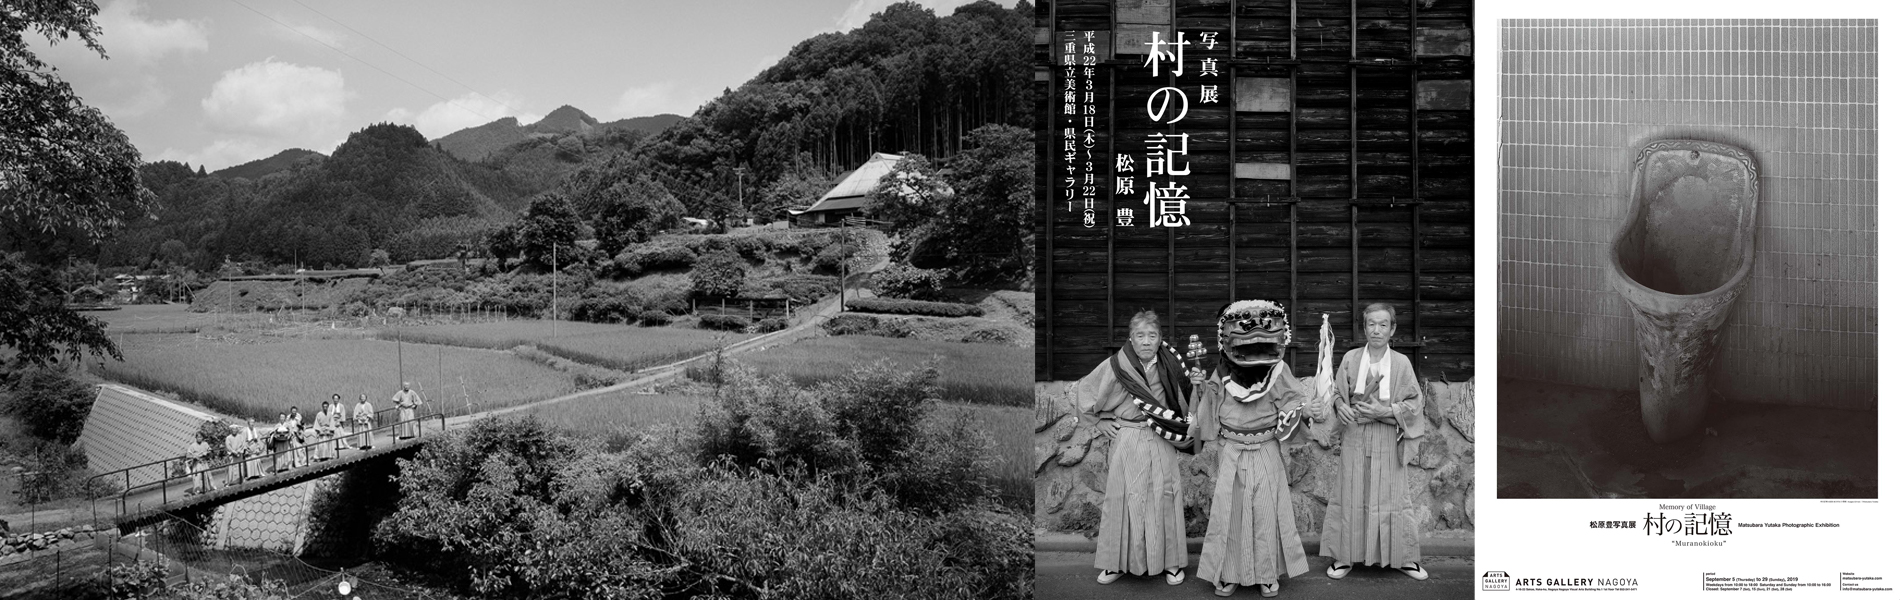 松原豊Photoseries「村の記憶」/ 三重県 / 日本